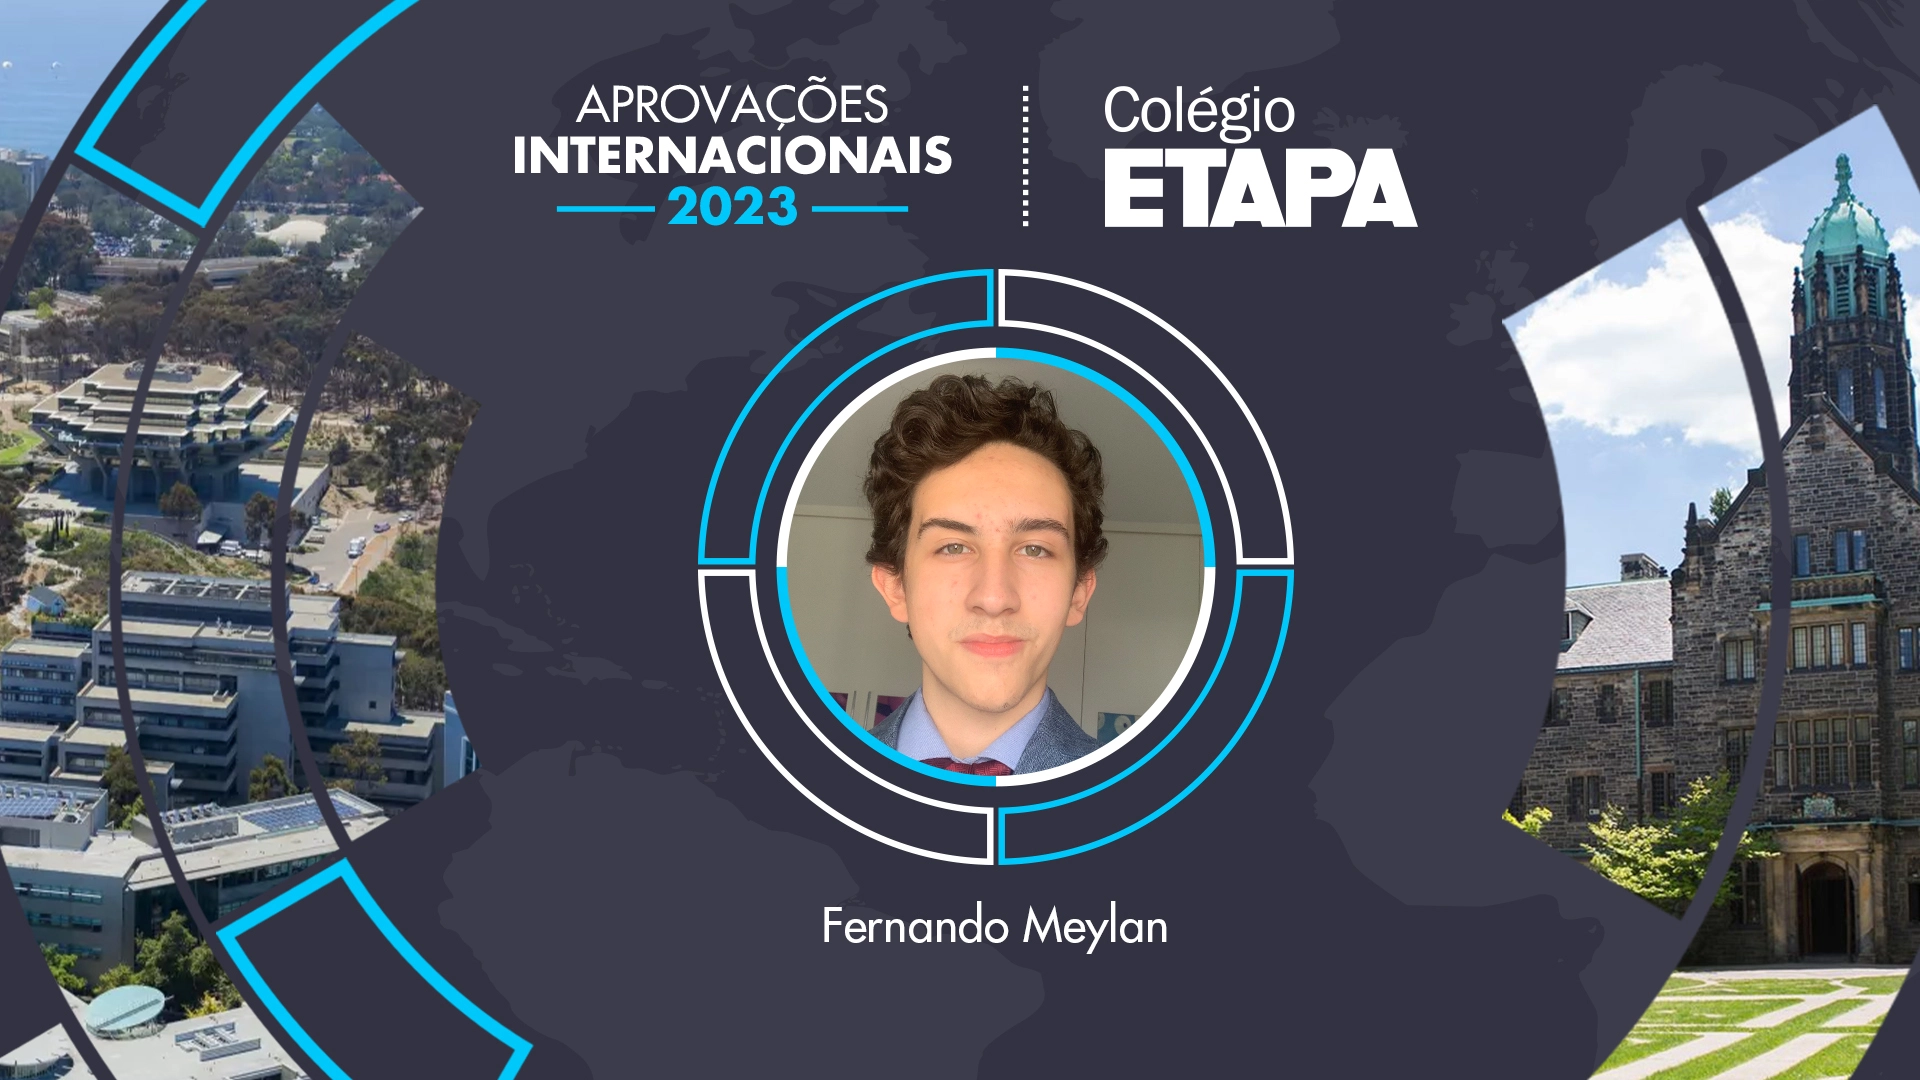 Aprovações internacionais 2023: Fernando Meylan